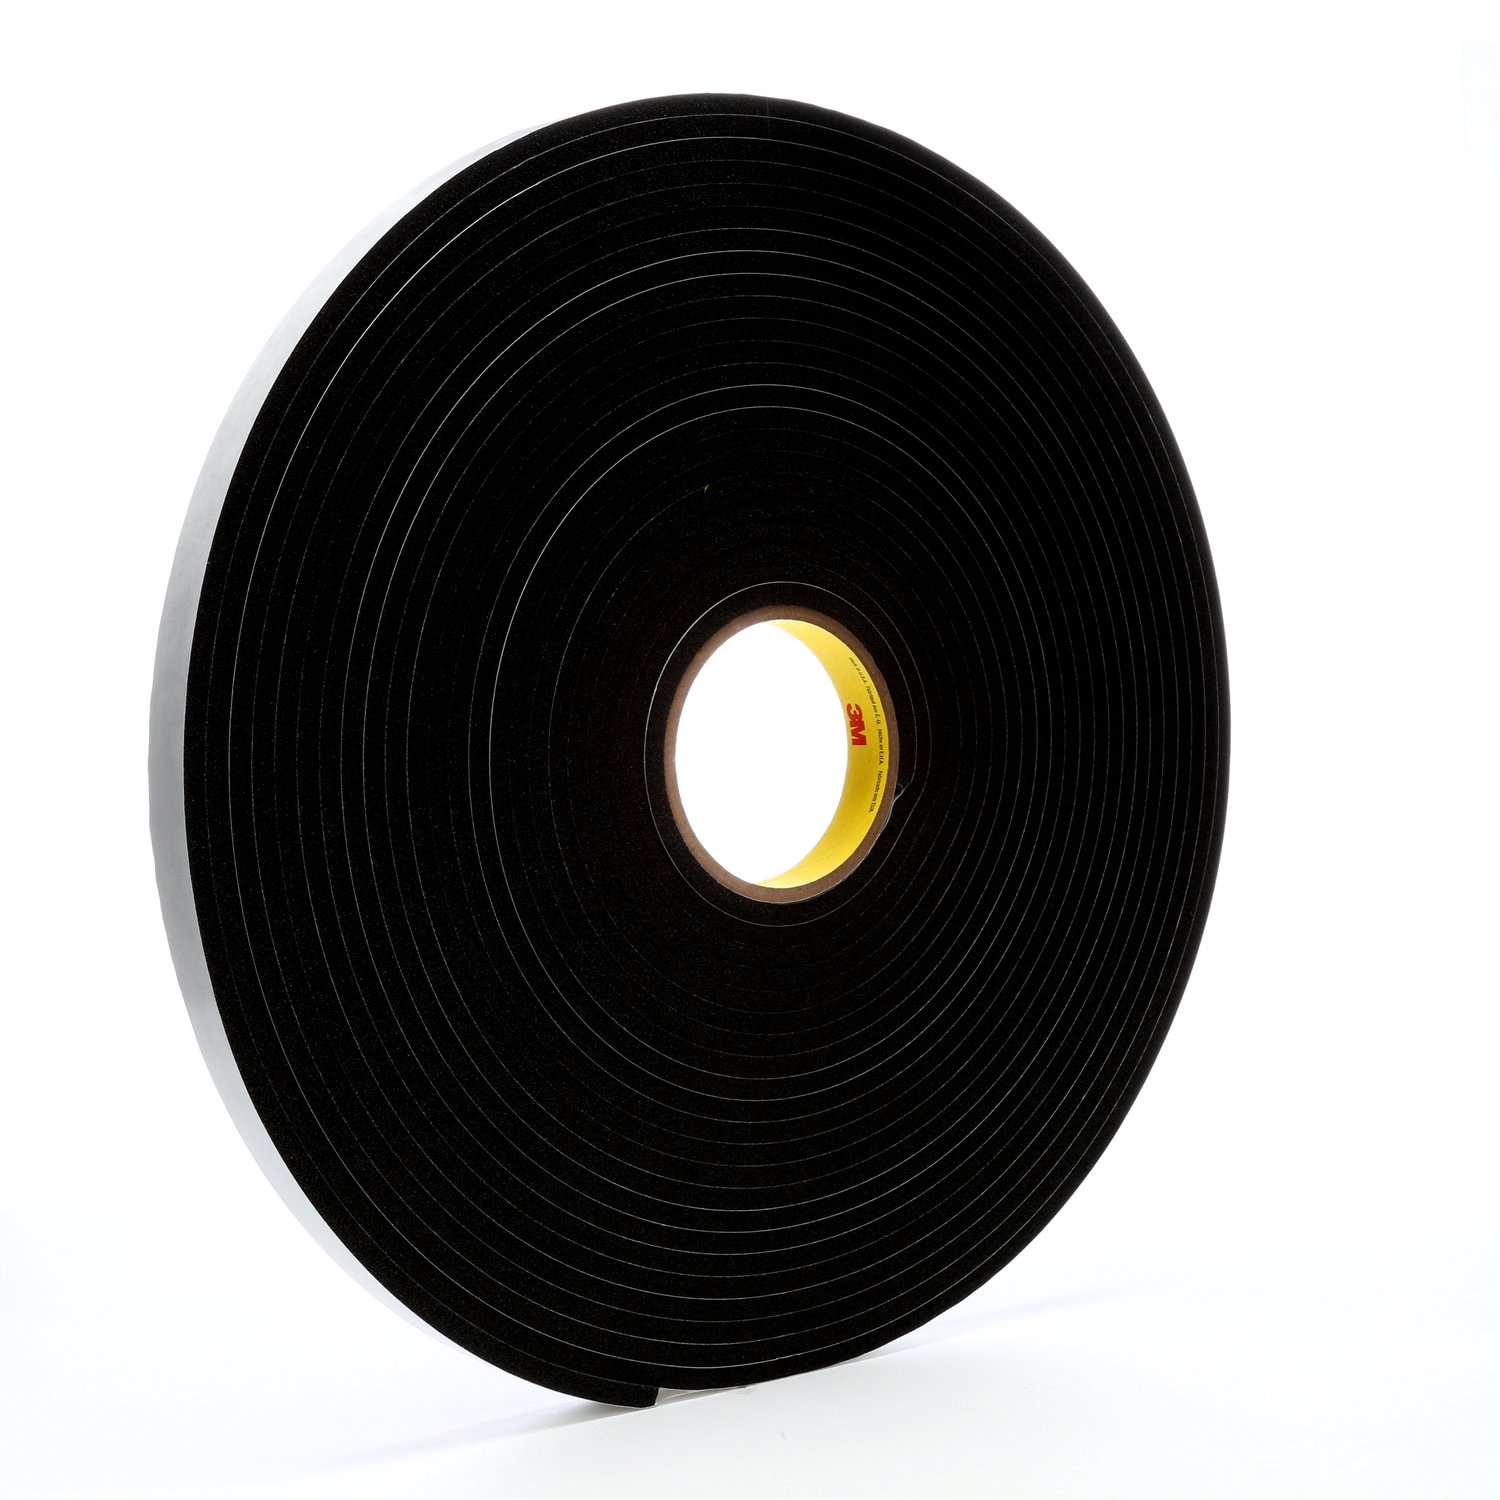 7000047498 - 3M Vinyl Foam Tape 4504, Black, 3/4 in x 18 yd, 250 mil, 12 rolls per
case